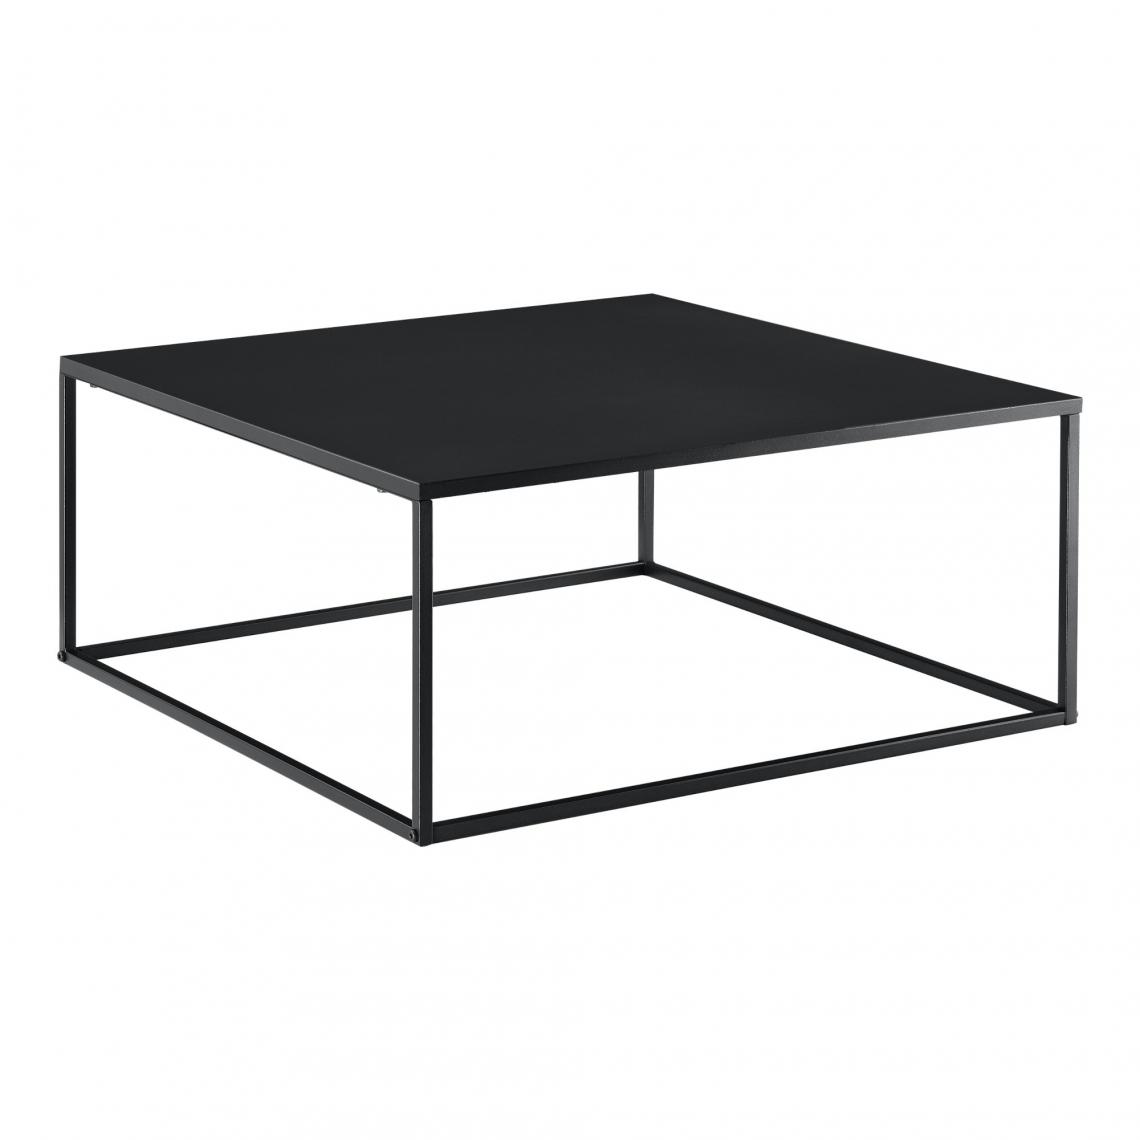 Helloshop26 - Table basse carrée salon en métal 85 x 85 cm noir mat 03_0006133 - Tables basses